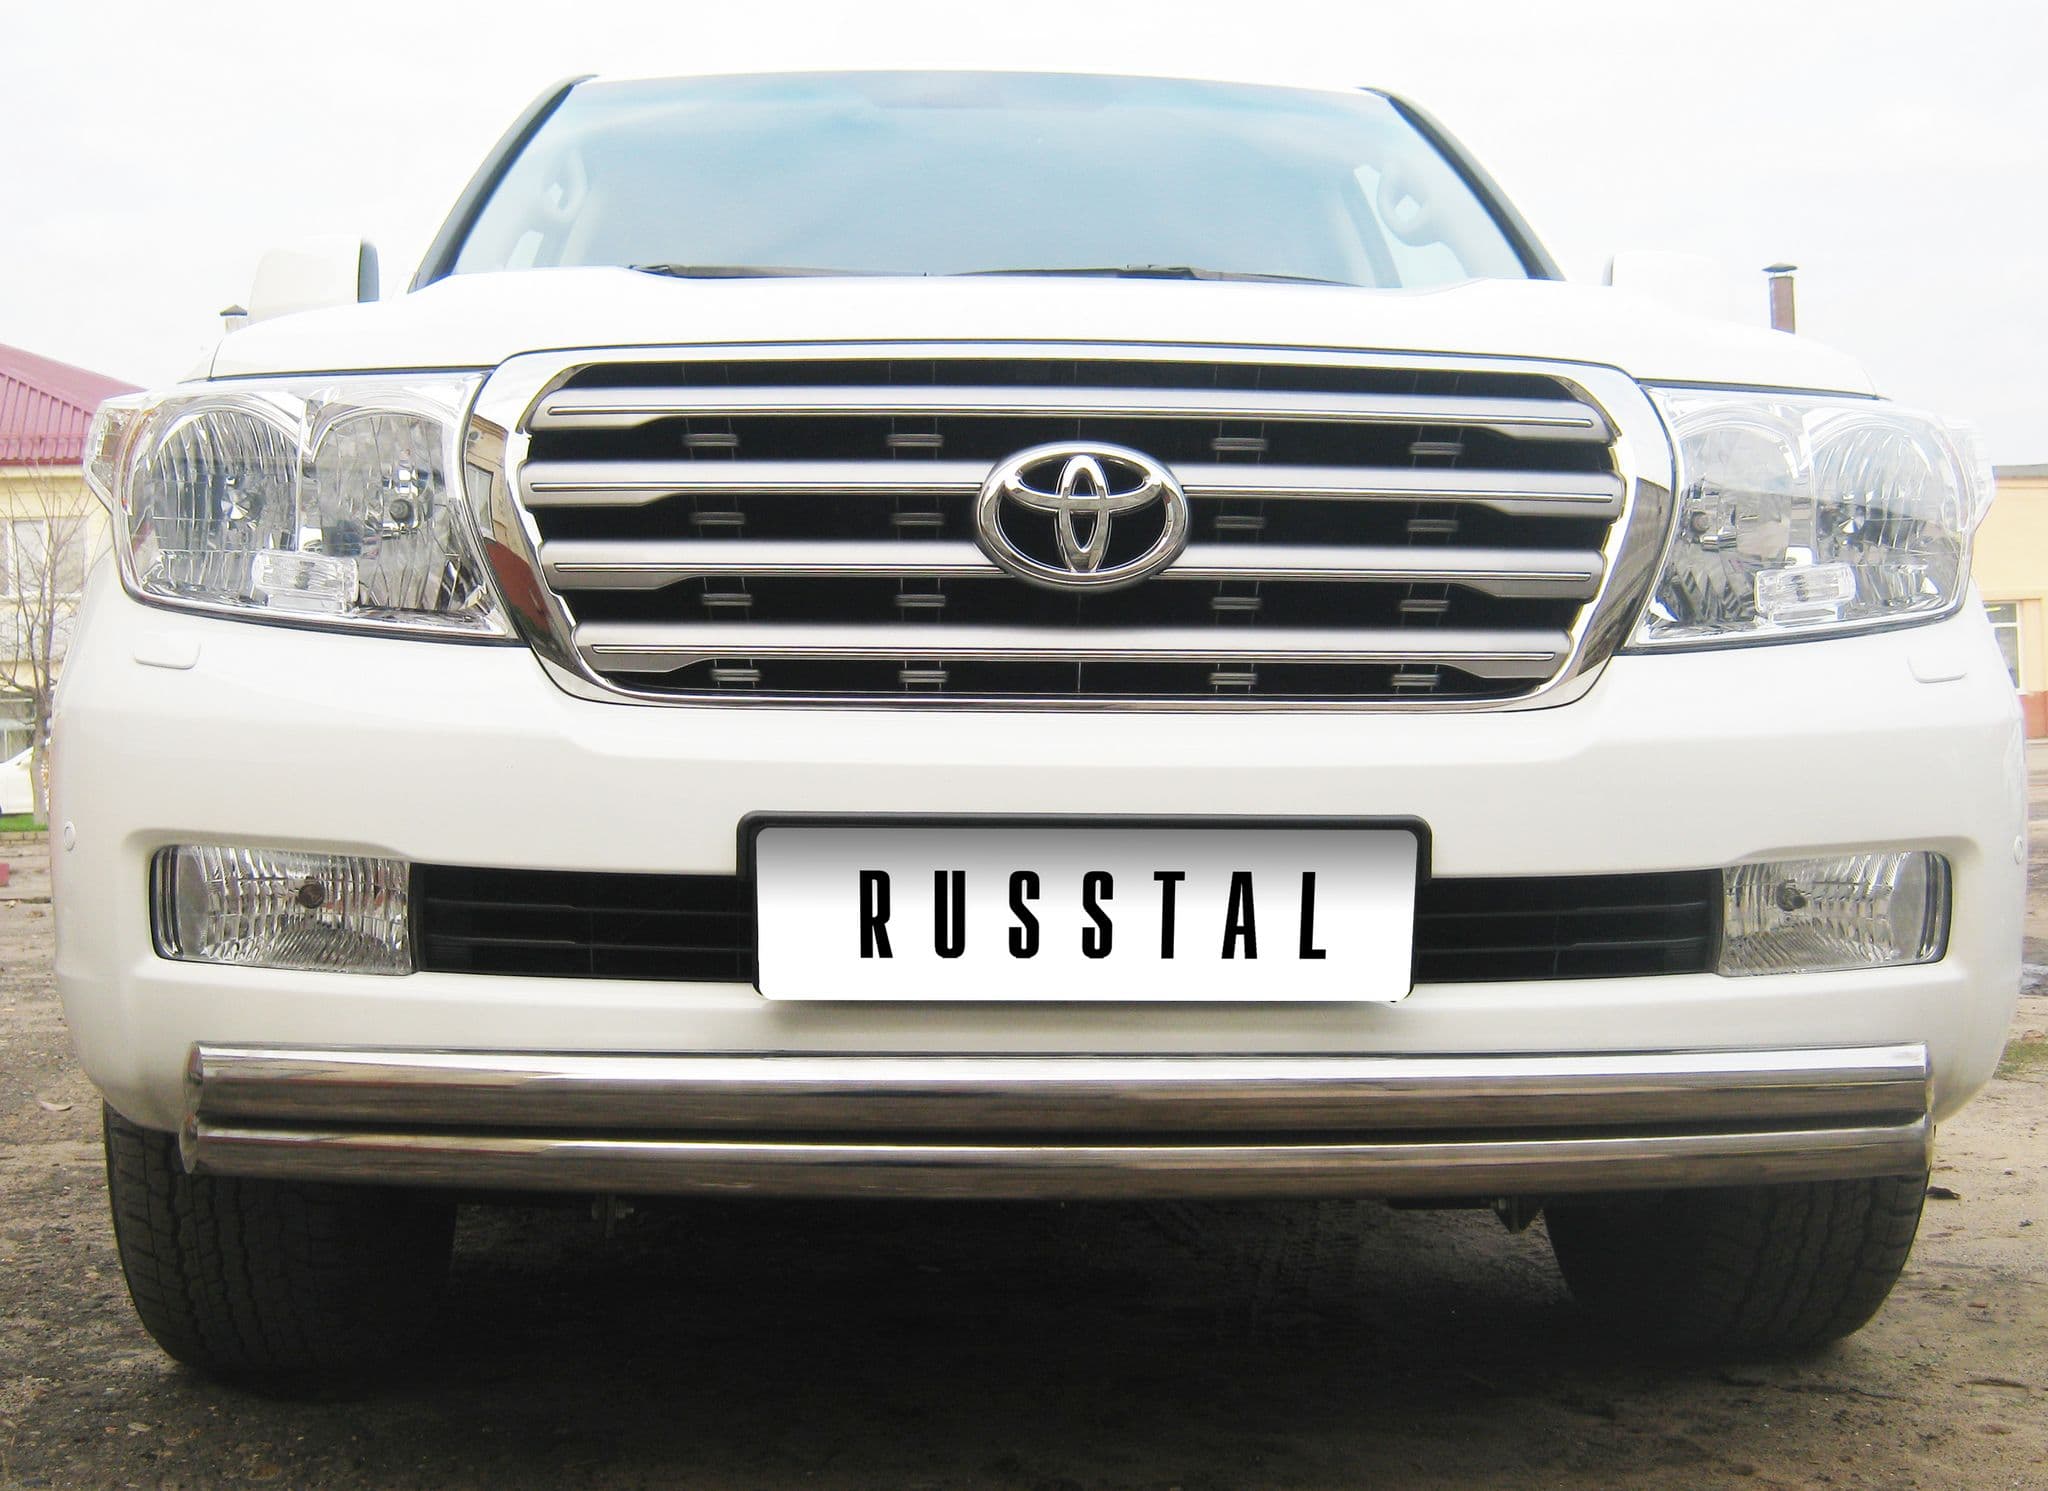 Передняя защита Russtal для Toyota Land Cruiser 200 (2007-2012)